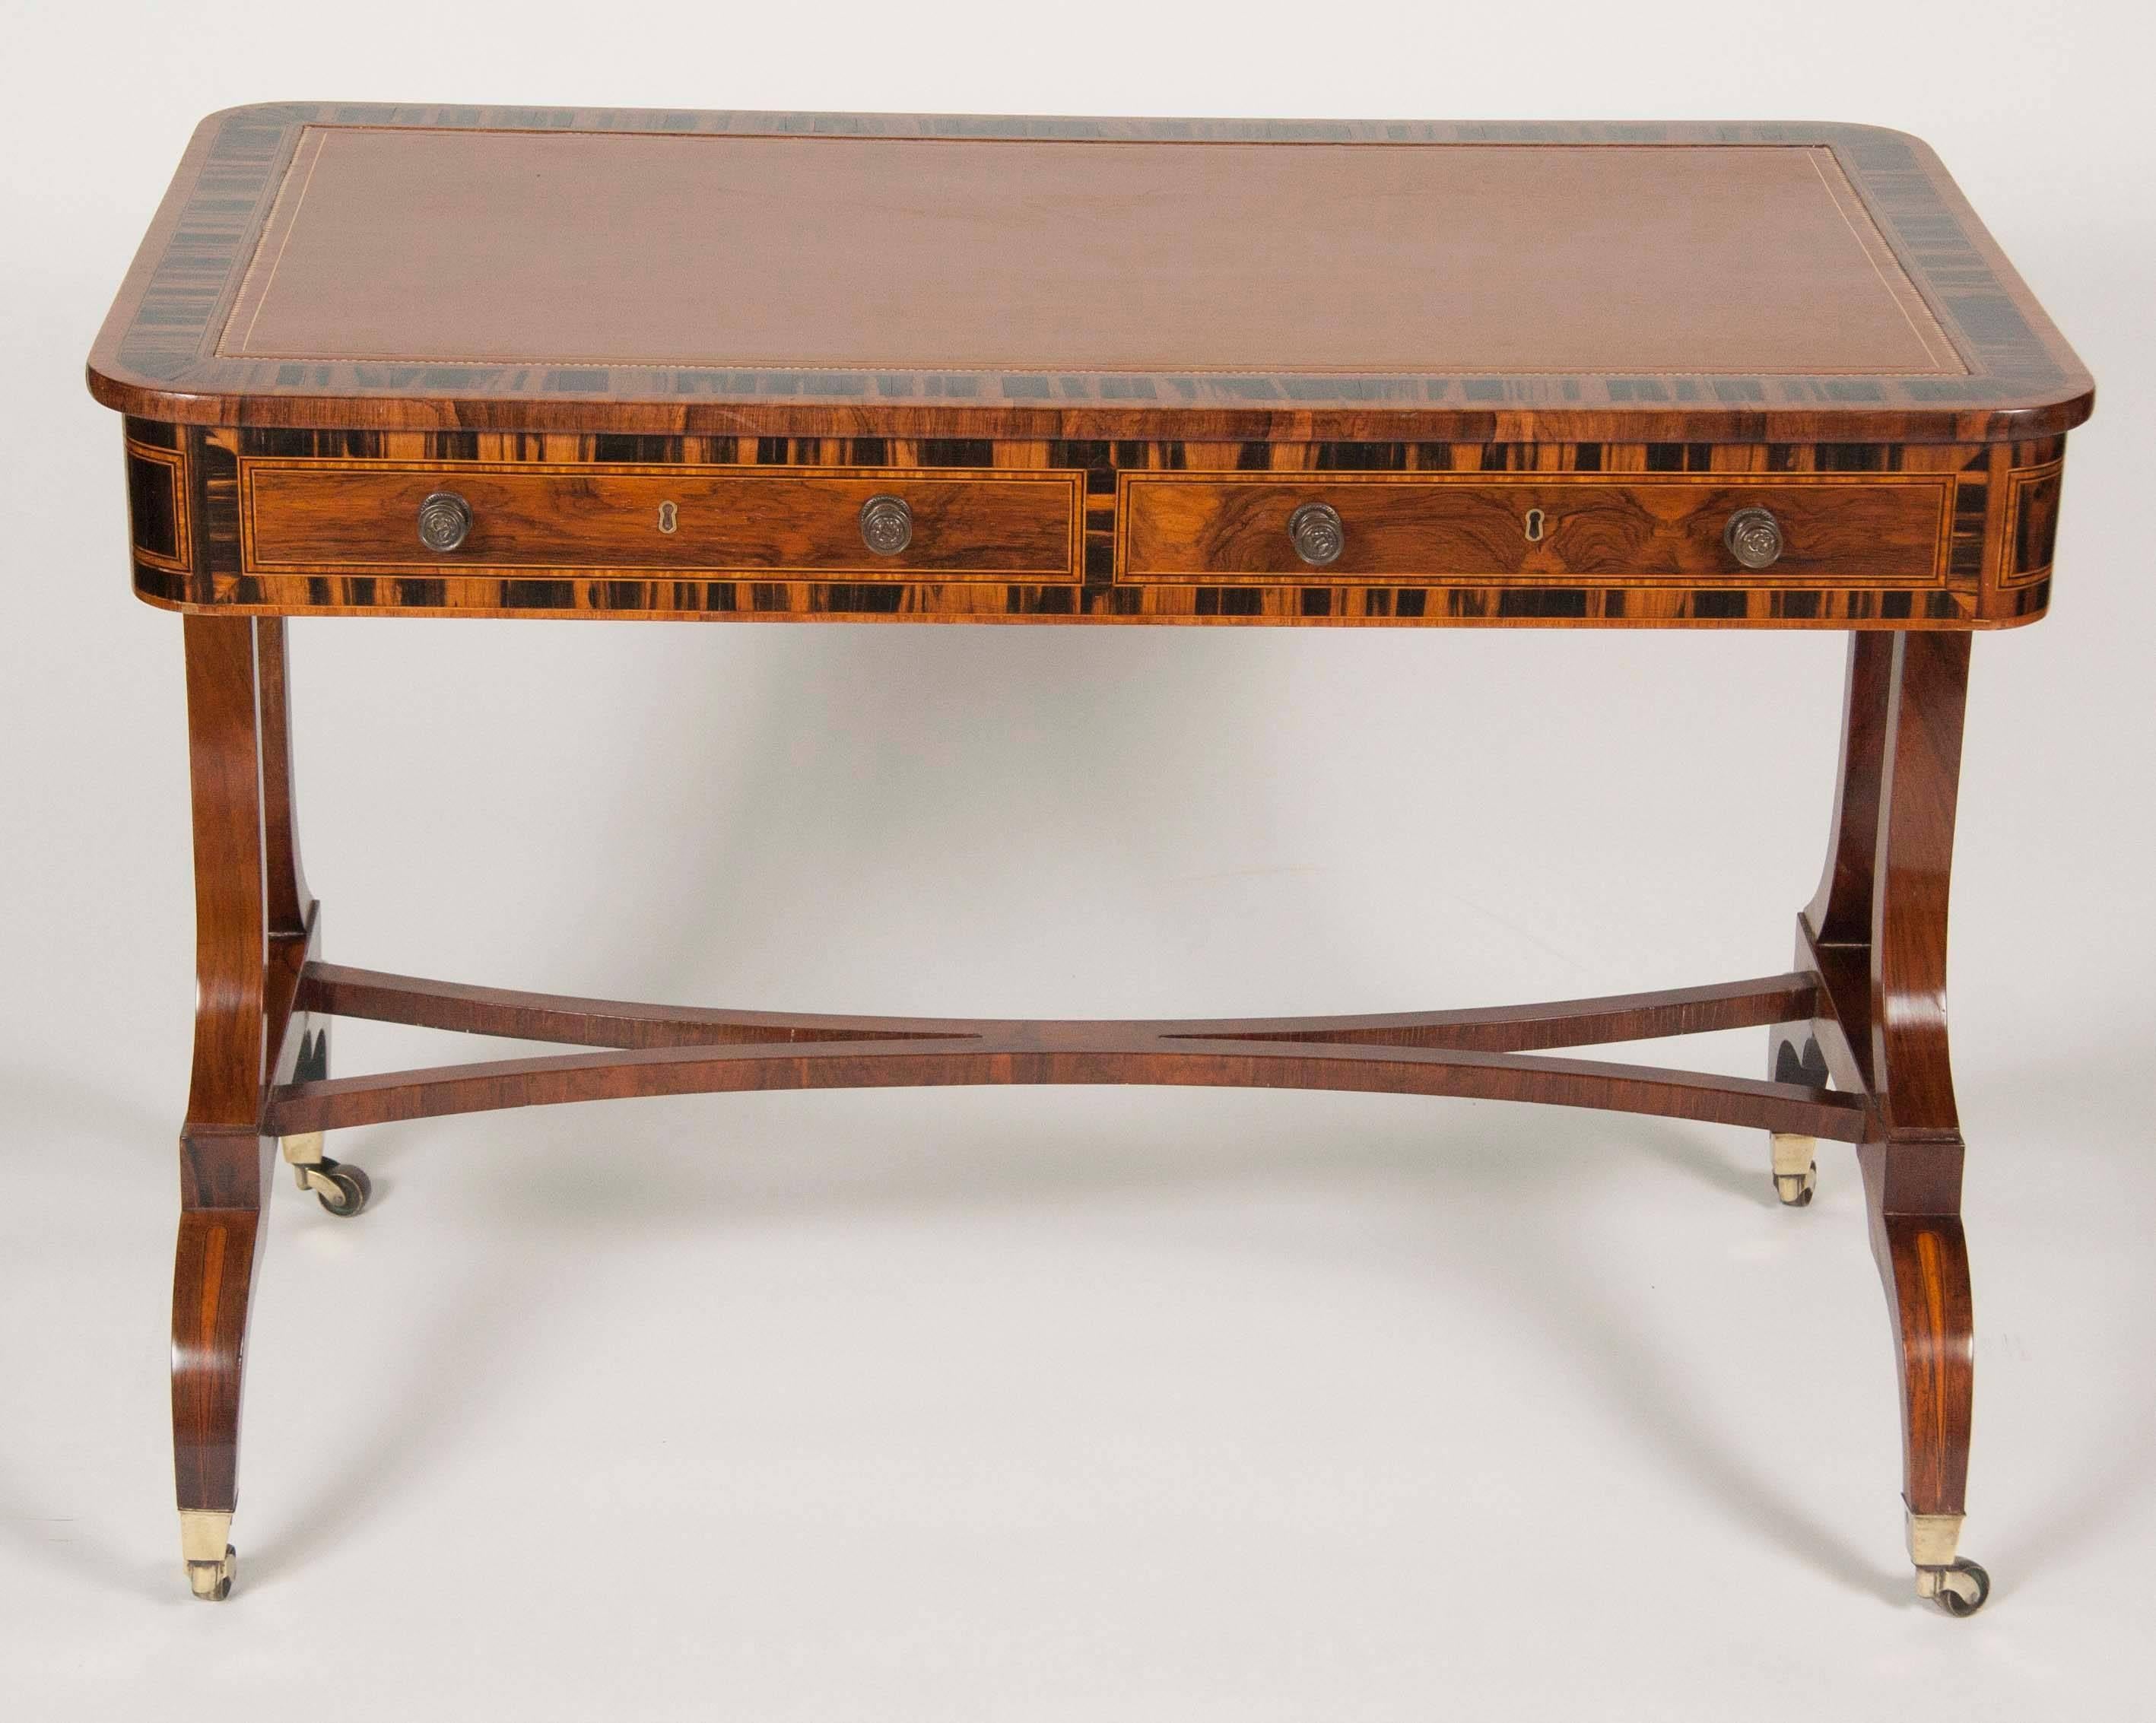 Ein Regency-Tisch aus Palisander und Kalamander in exquisiter Form und Ausführung.